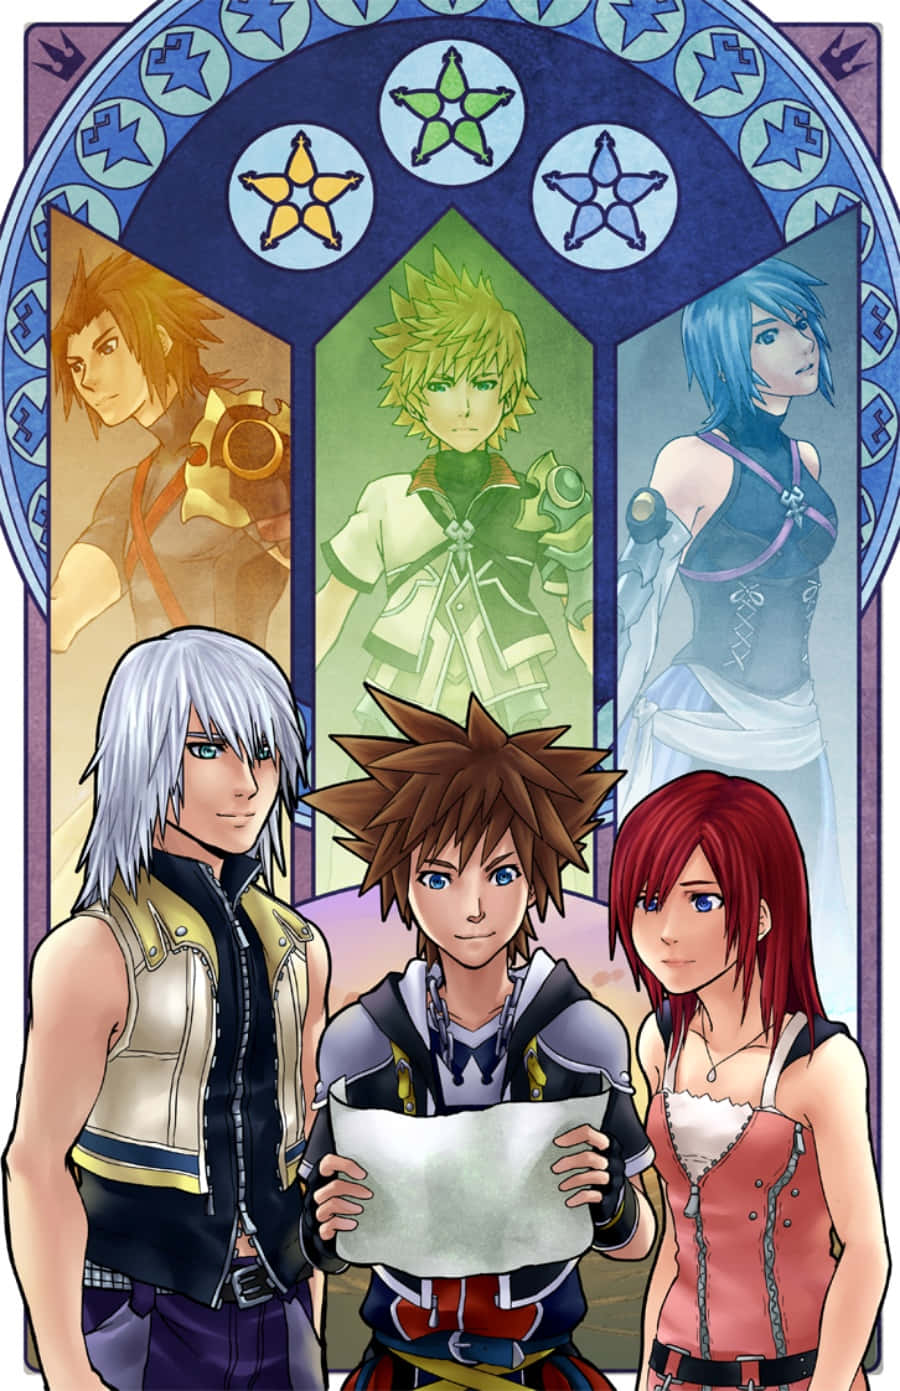 Begibdich Auf Eine Epische Reise Mit Sora Und Seinen Freunden In Kingdom Hearts.